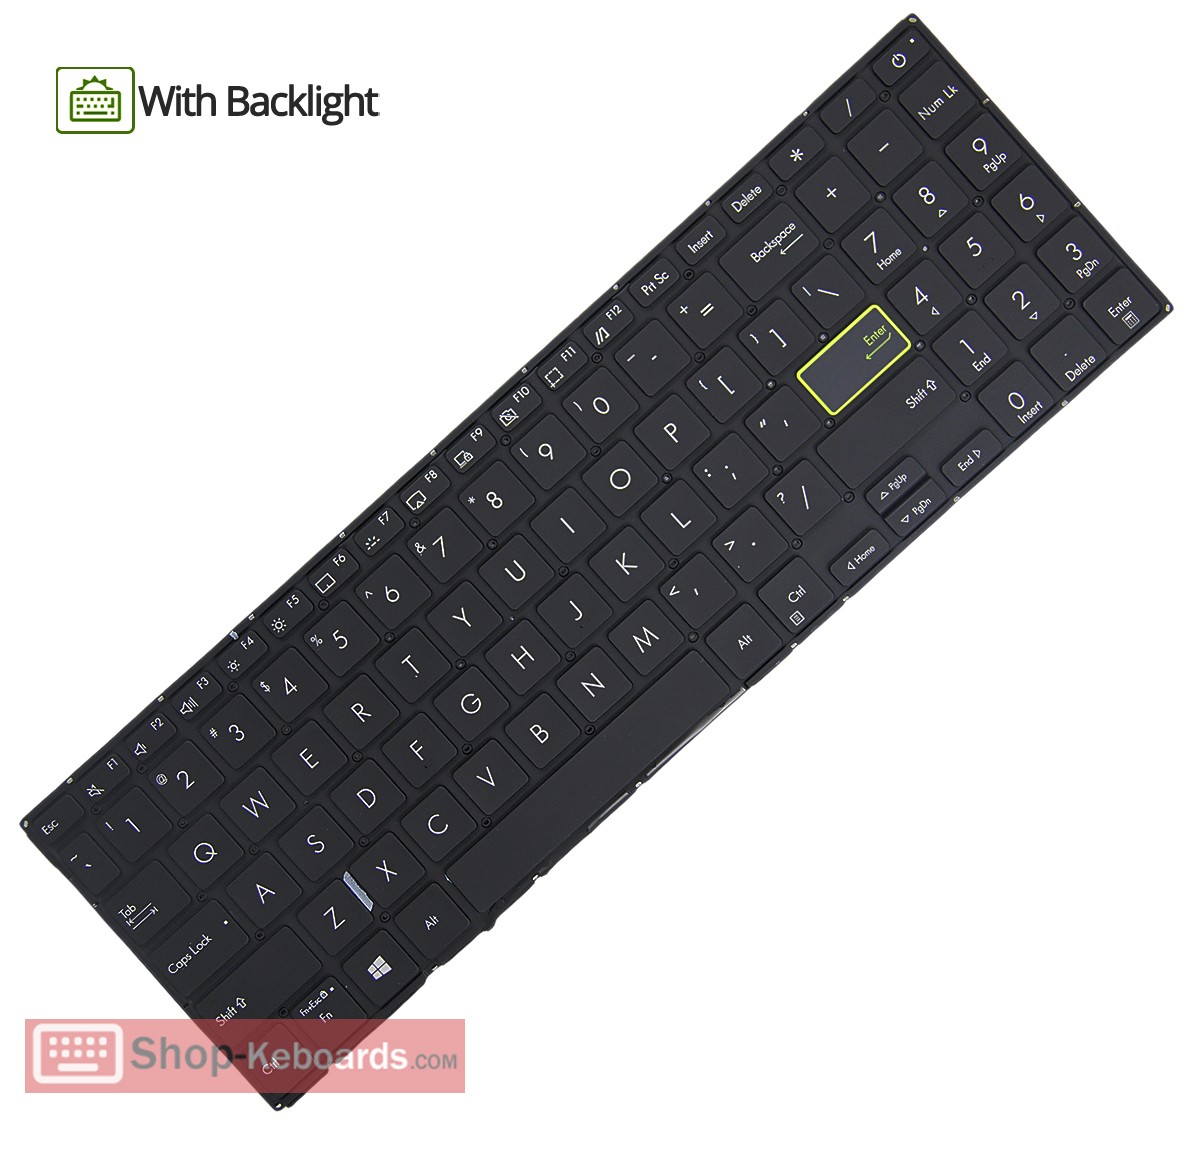 Asus AEBK4U00010 Keyboard replacement